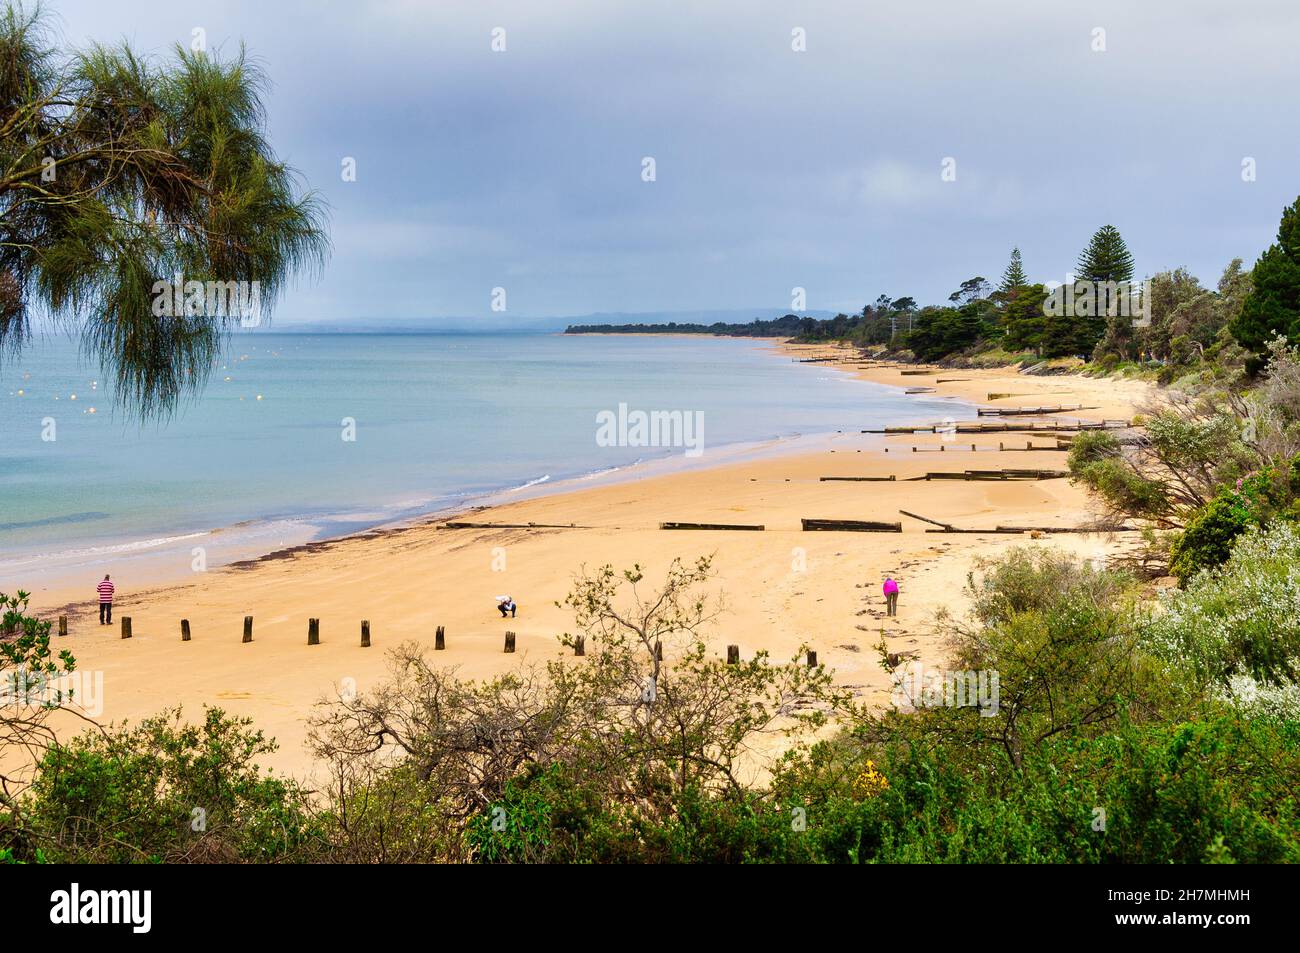 Überreste alter hölzerner Seegurmchen am Strand - Cowes, Victoria, Australien Stockfoto